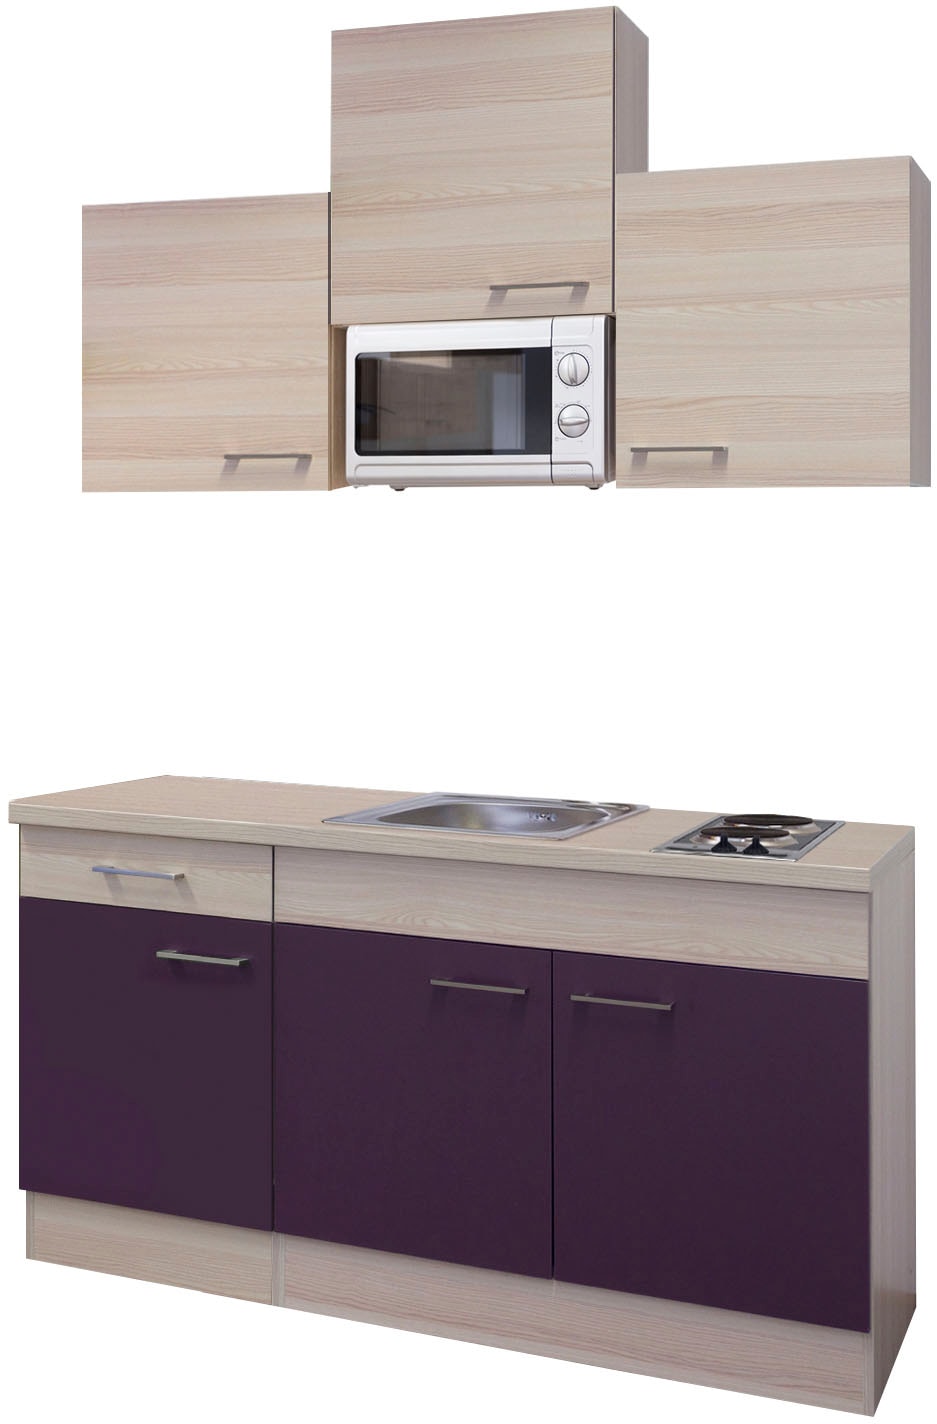 Flex-Well Küche "Portland", Gesamtbreite 150cm, mit Mikrowelle und Kochfeld, viele Farbenvarianten